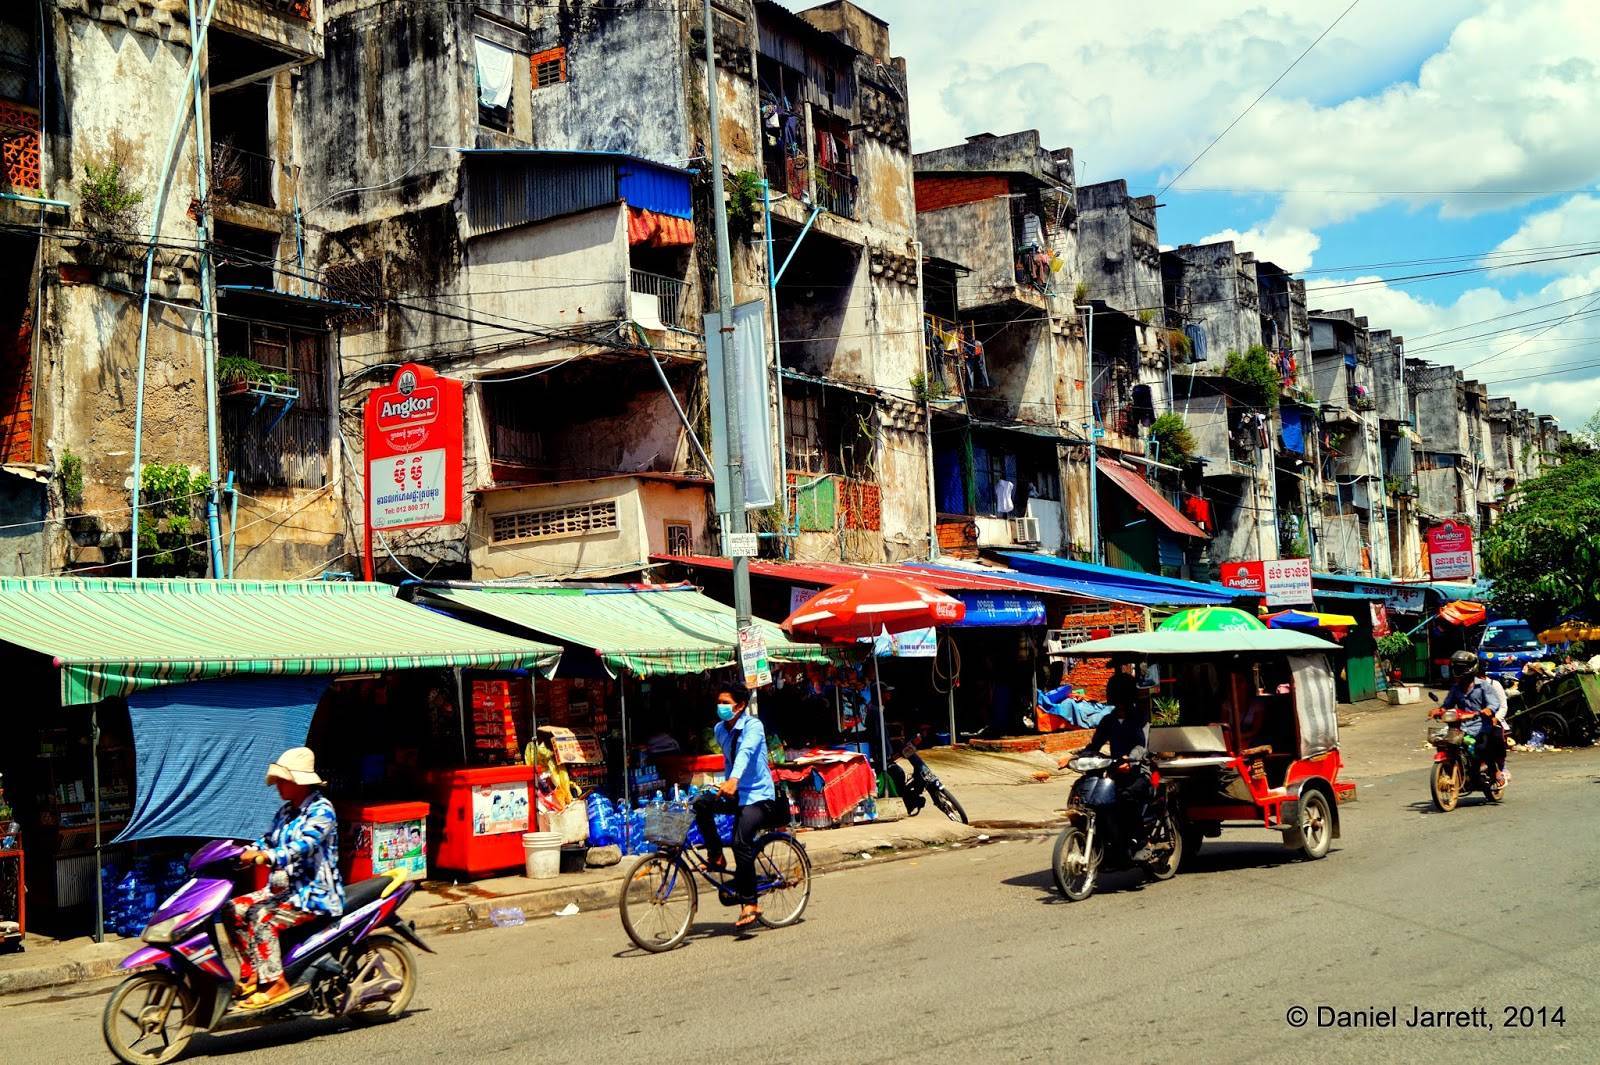 Город пномпень - столица камбоджи: фото, видео, как добраться - 2022